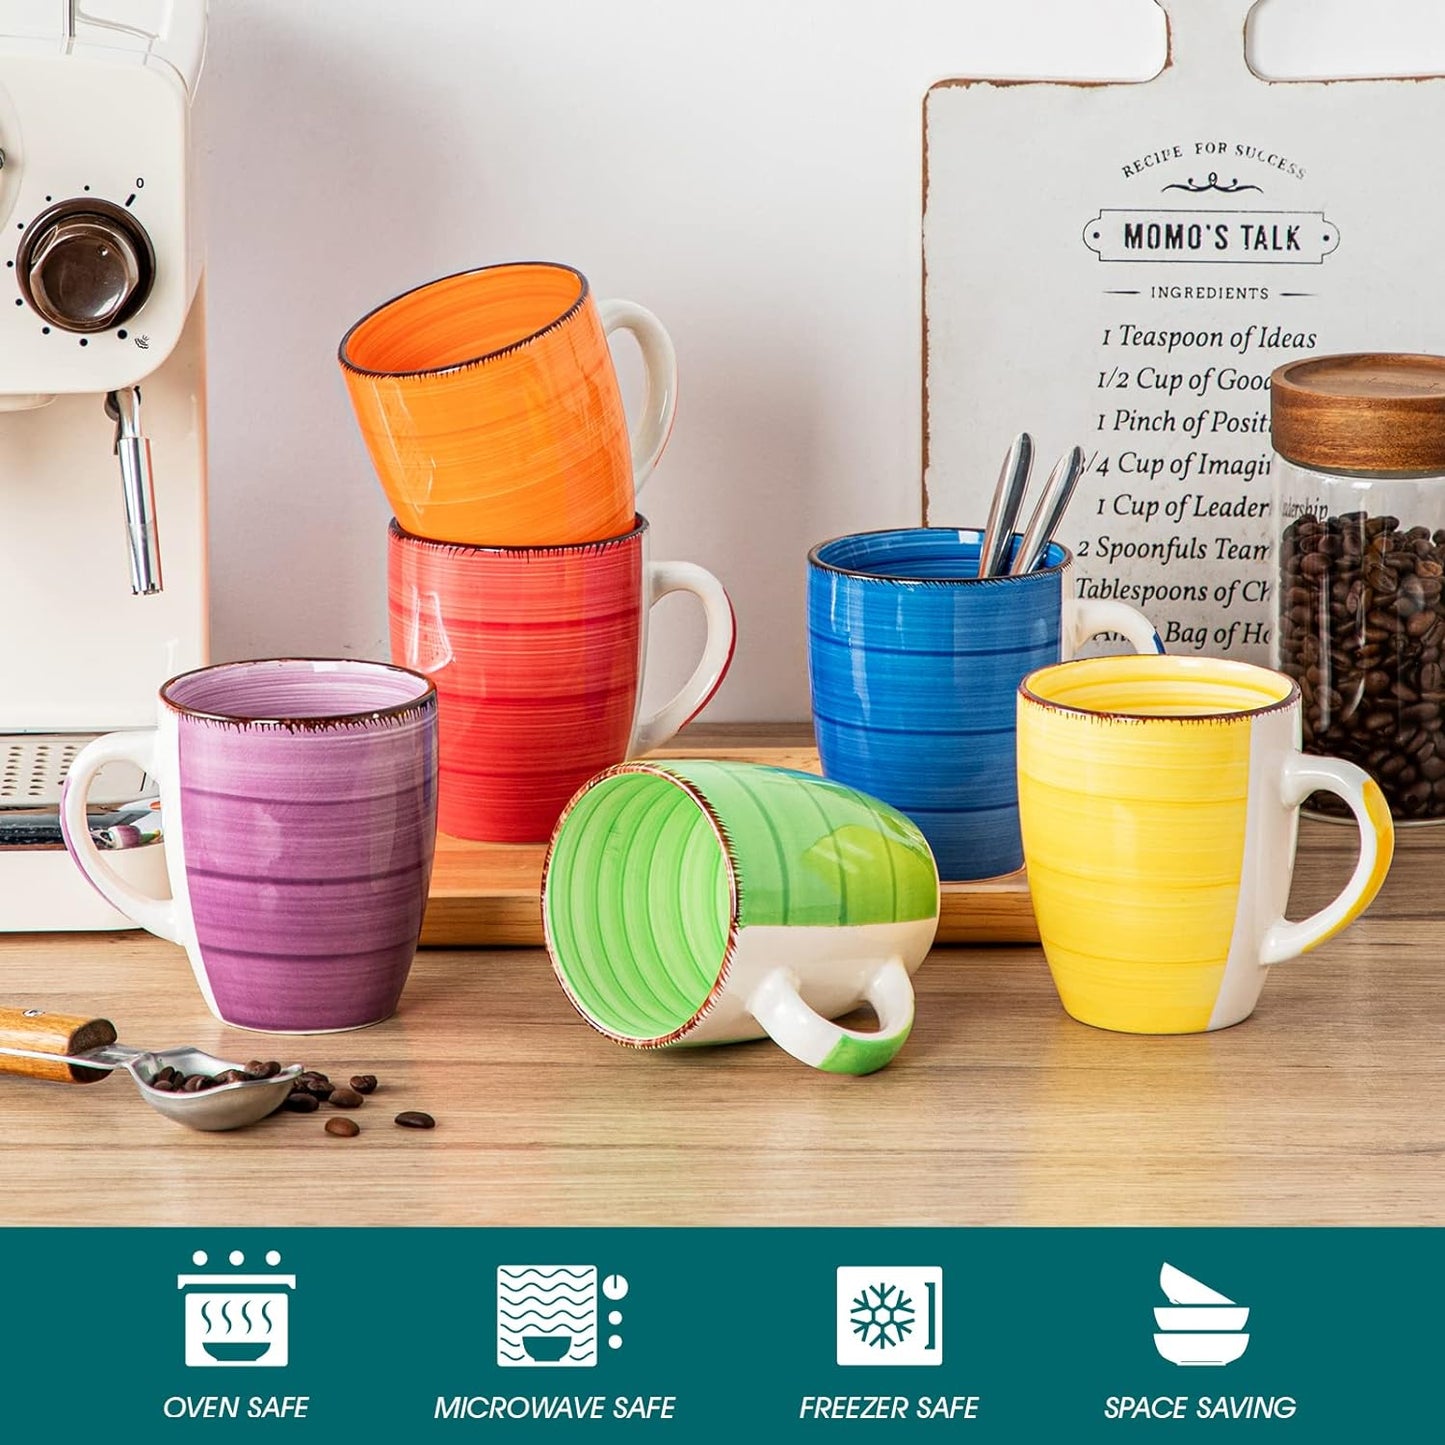 vancasso Bonita 12 Oz Coffee Mugs Set of 6, Ceramic Coffee Cups for Cappuccino, Latte, Tea, Cocoa, Warm Color